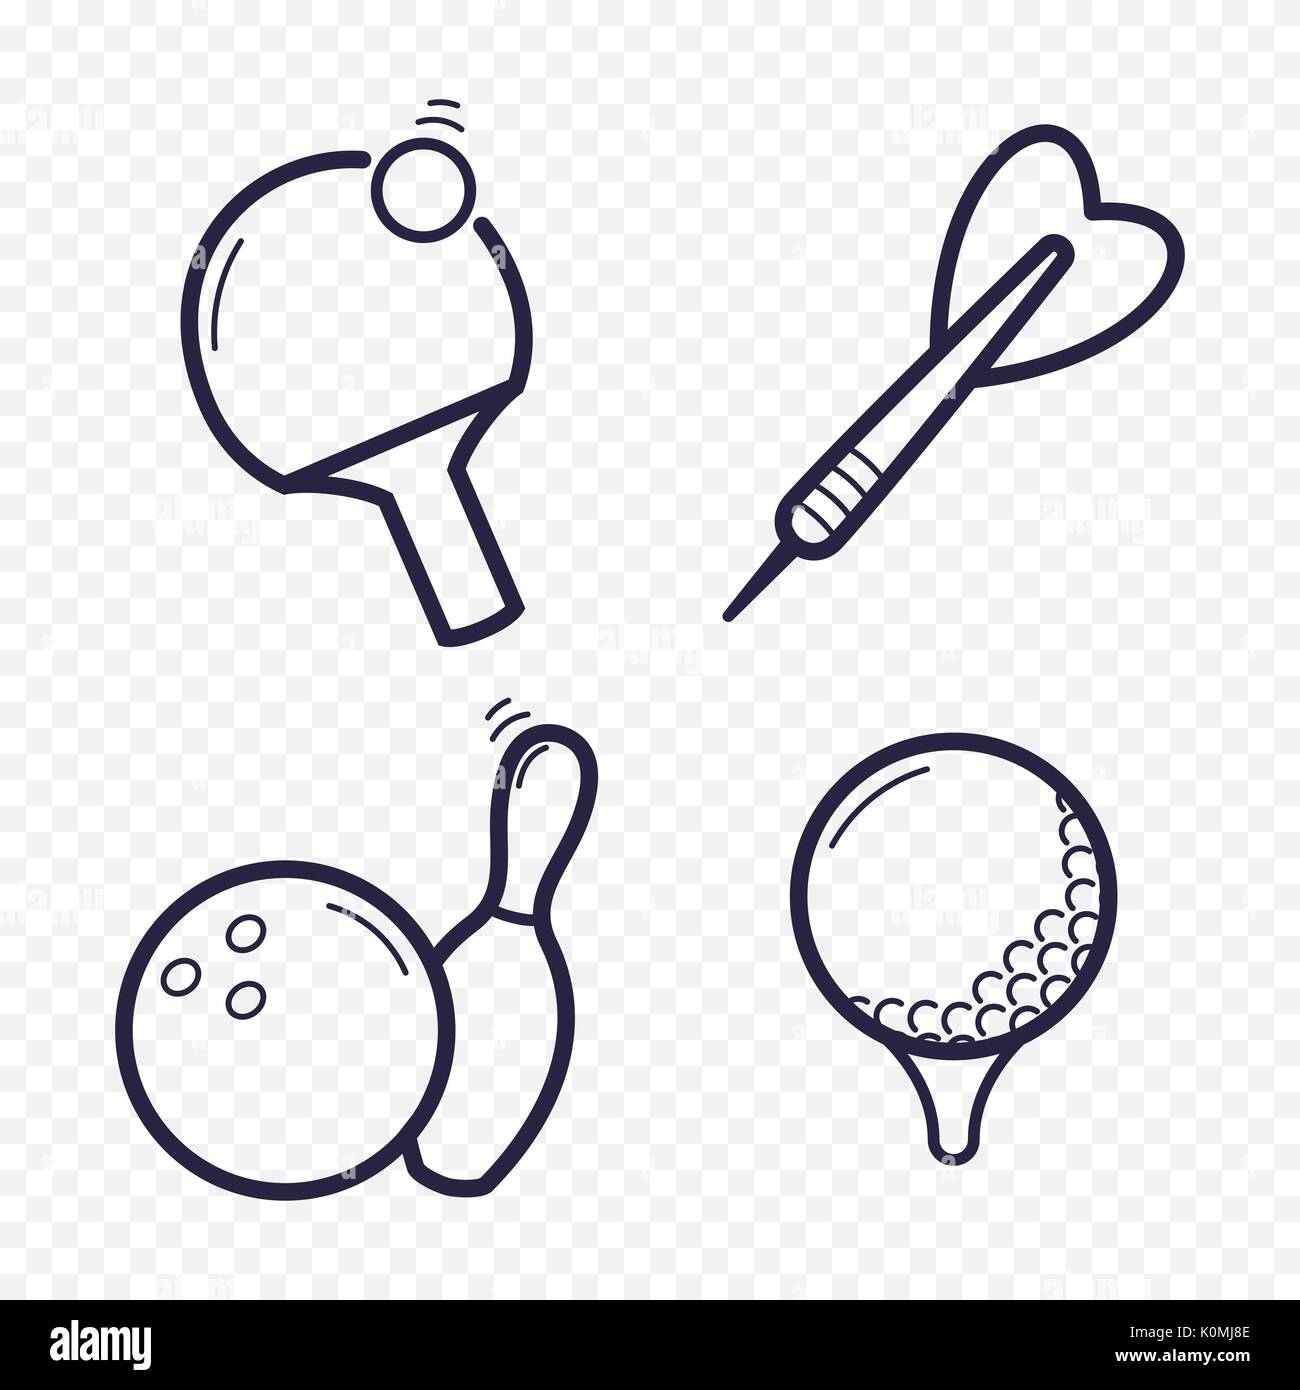 Spiele lineare Symbole. Ping-pong, Golf, Bowling, Darts Freizeitaktivitäten. Glücksspiel, Sport Spiel symbol Leitung. Stock Vektor